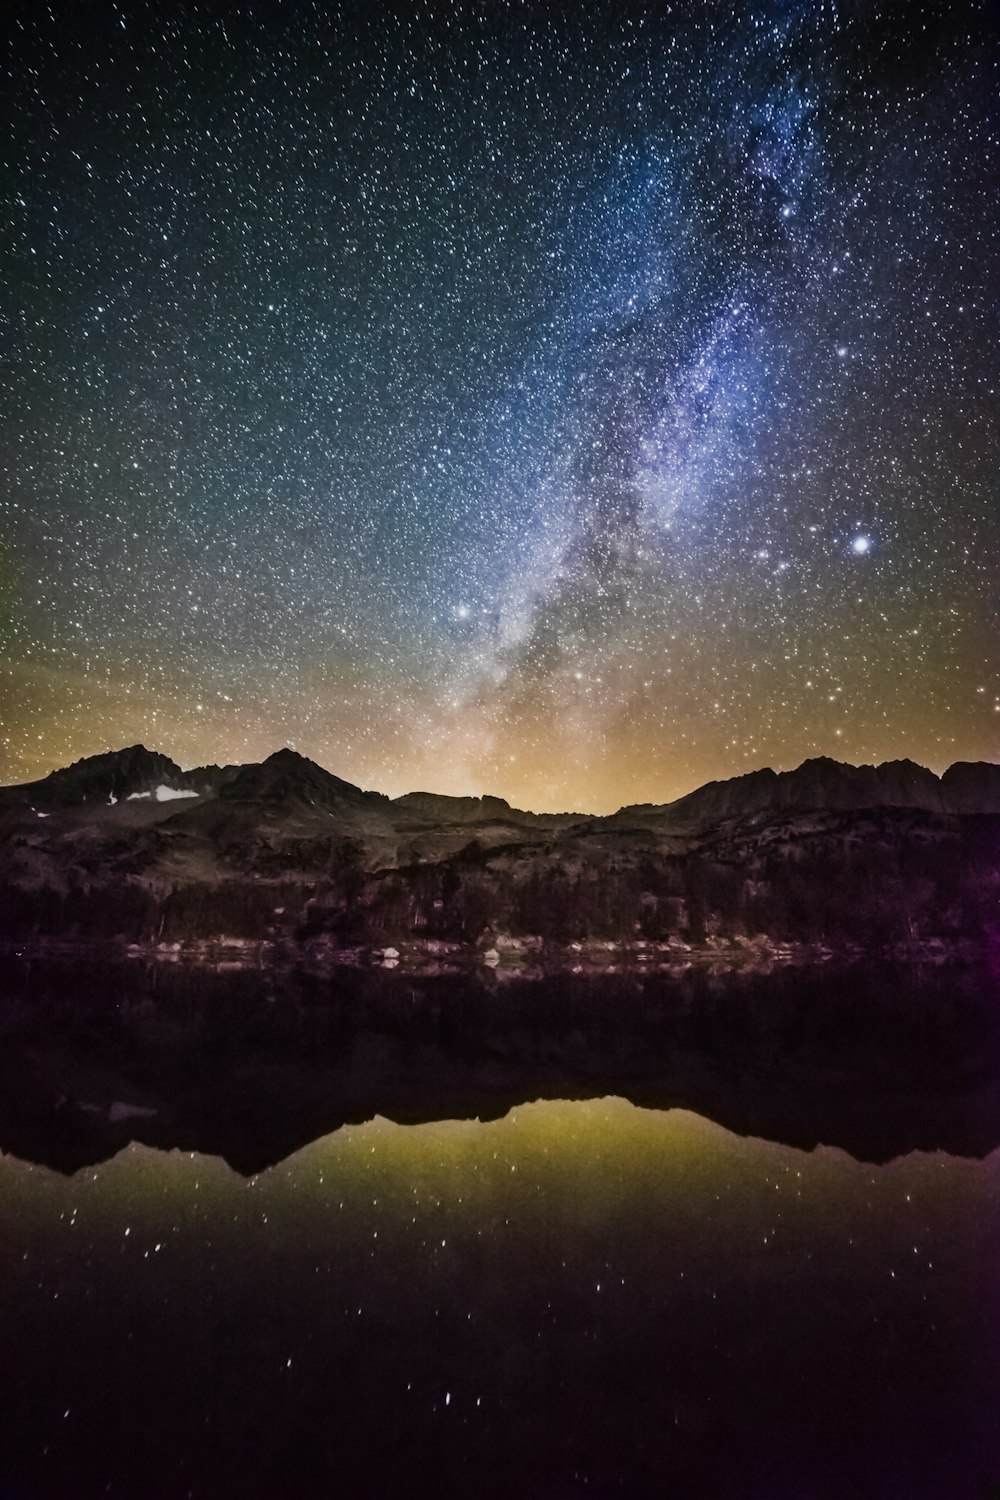 유리 호수 옆 산 너머로 별이 빛나는 밤하늘